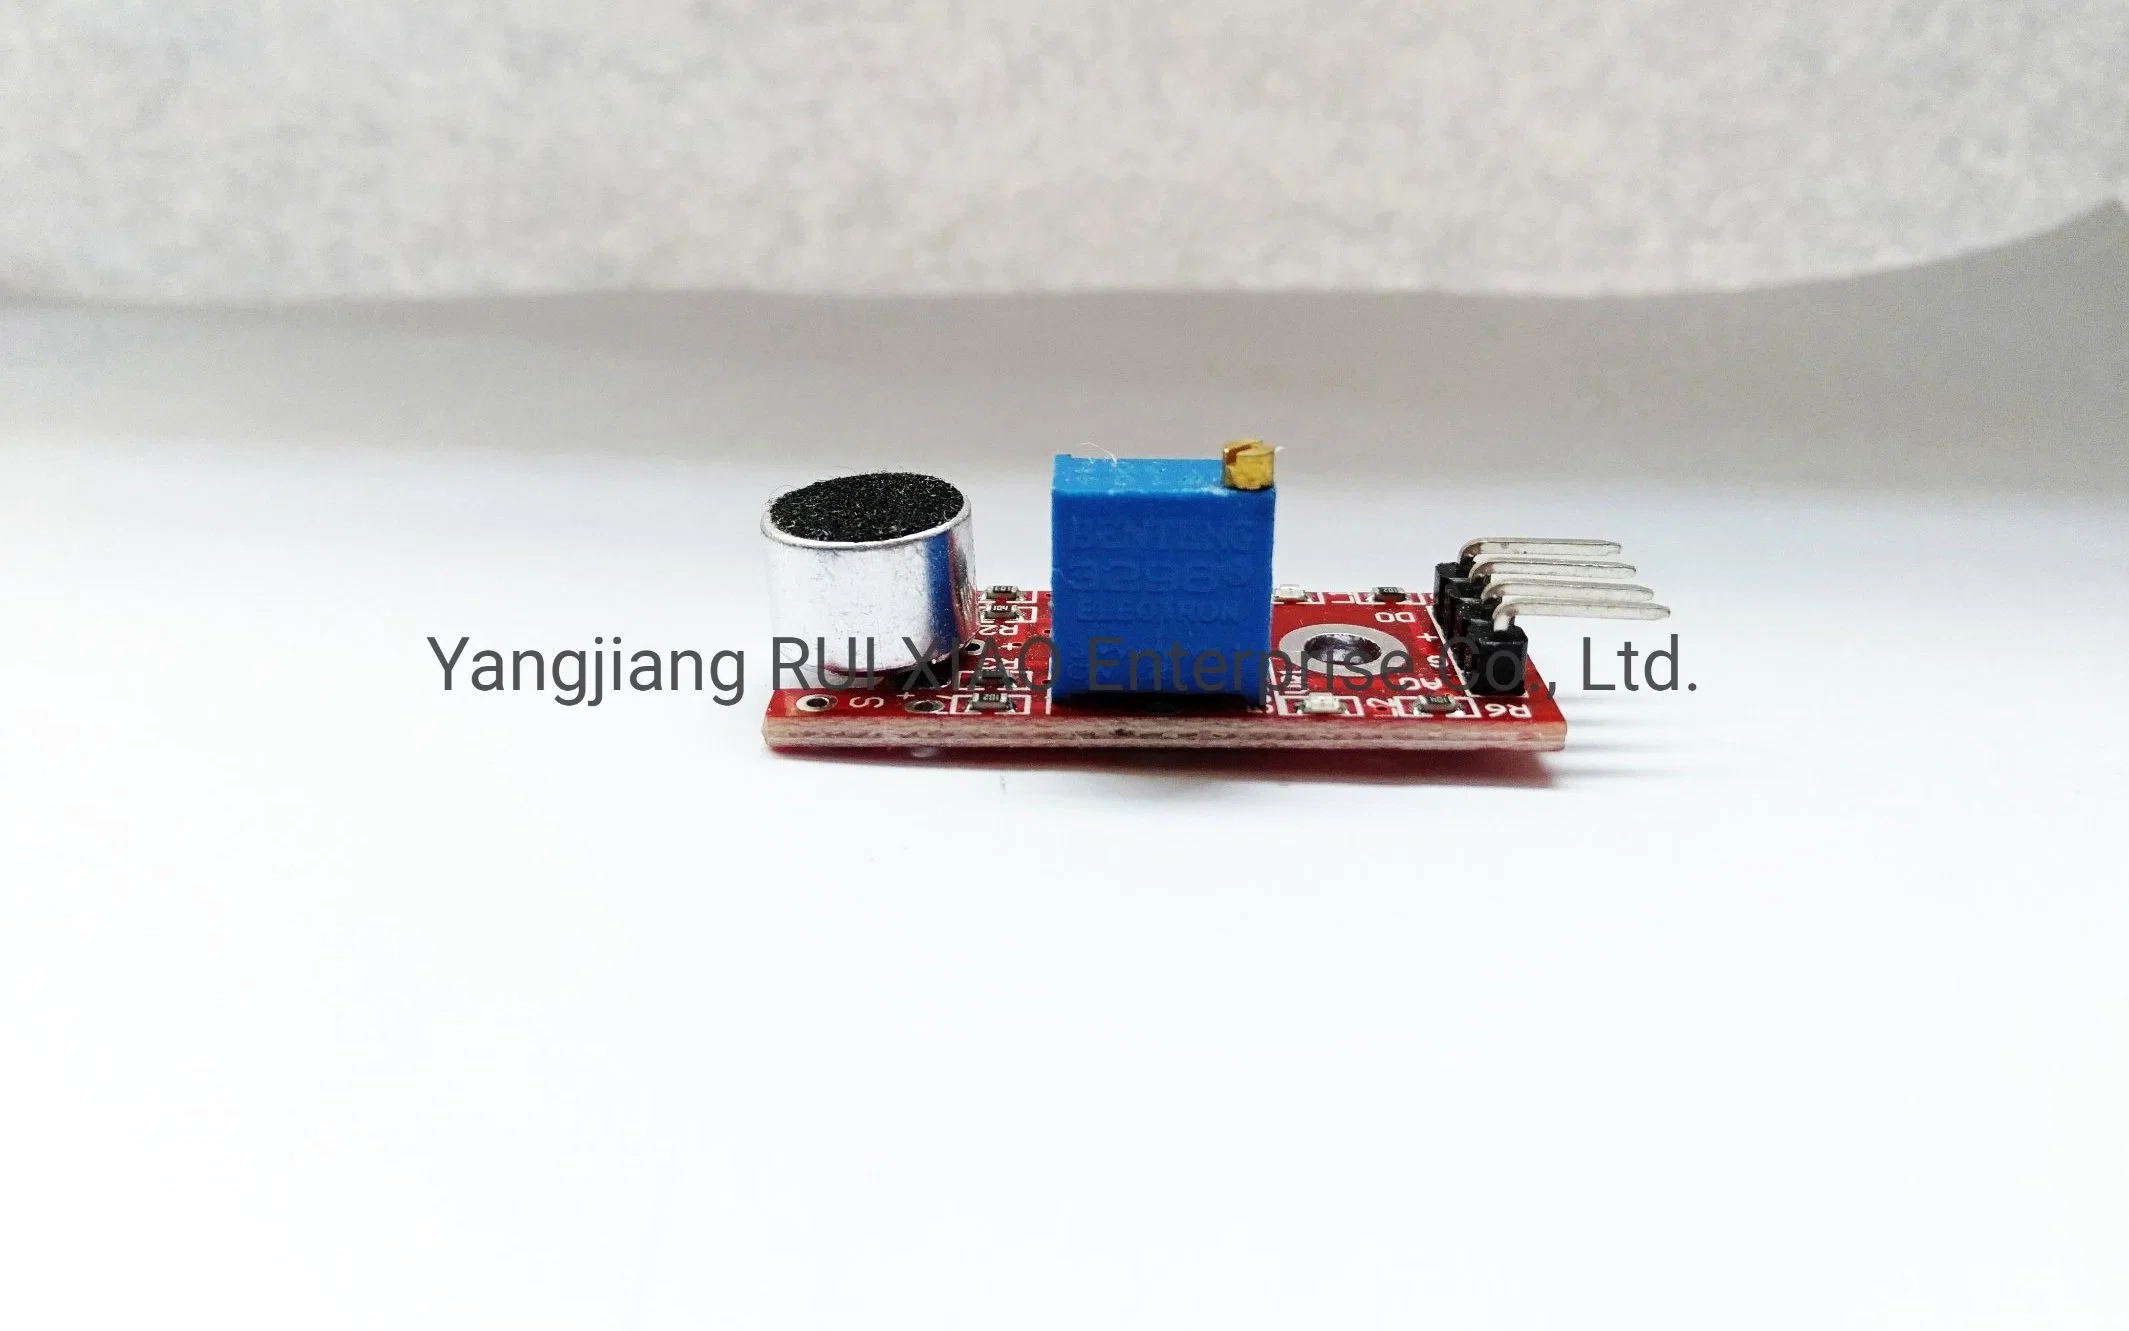 Chip Sensor de microcomputadoras, KY-037Módulo del sensor de micrófono, componentes electrónicos, un circuito integrado, Equipos Industriales